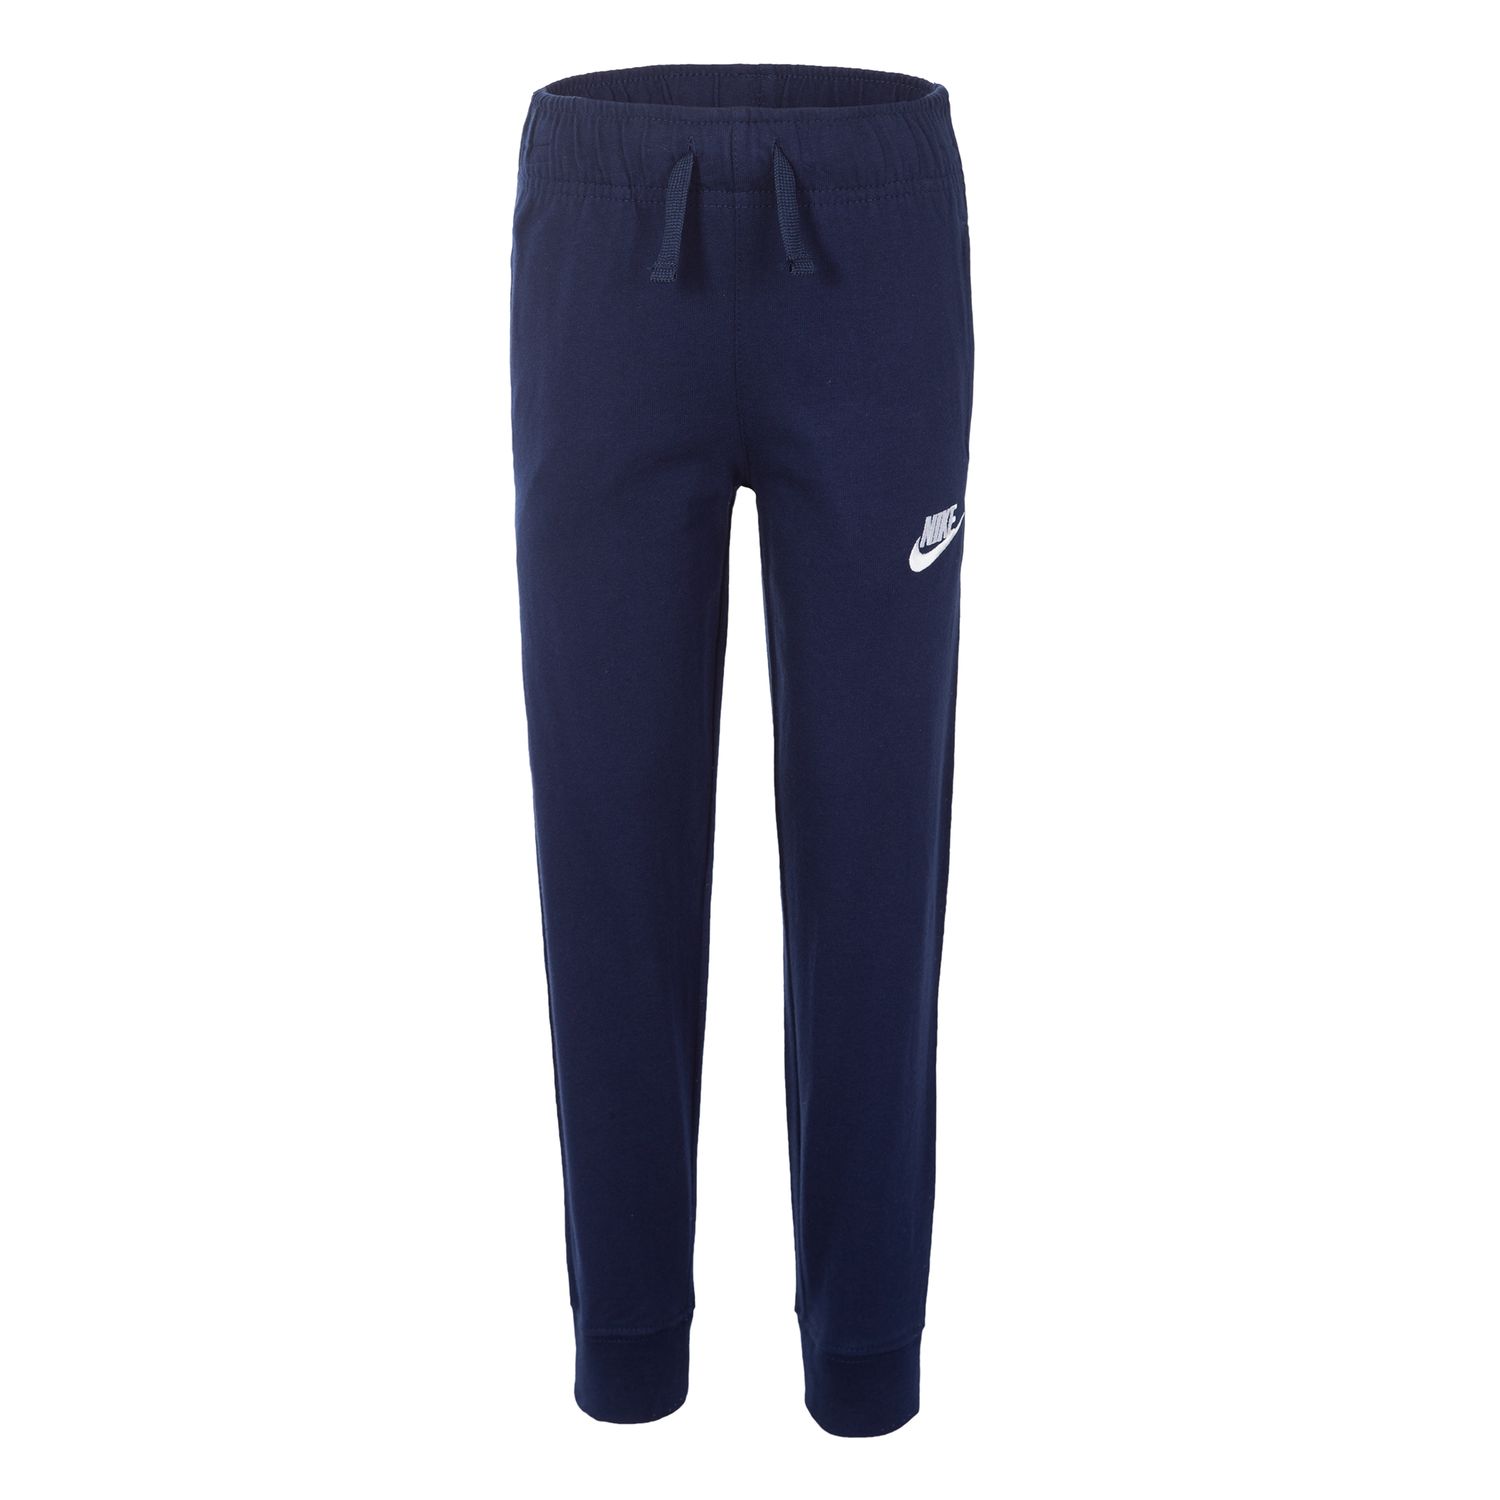 blue nike jogging pants